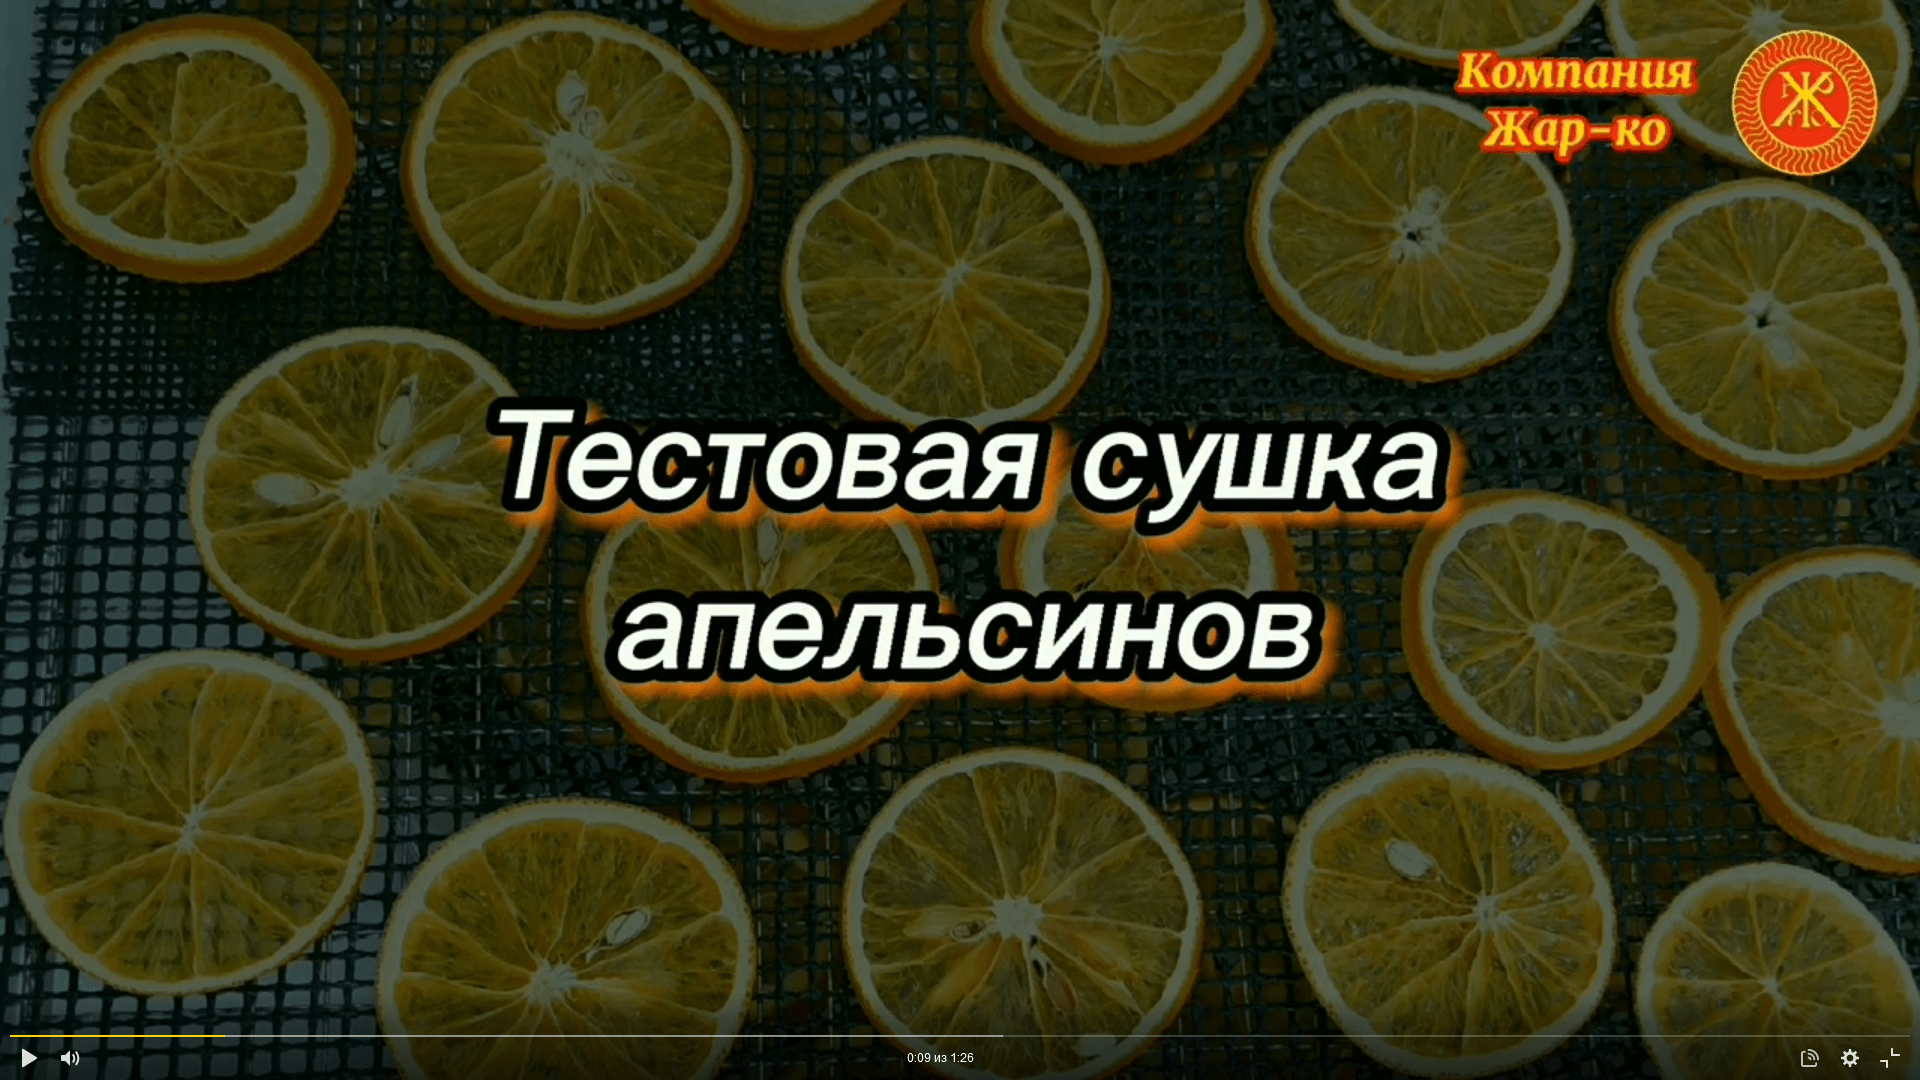 Тестовая сушка апельсинов в сушильной камере КС-30/06